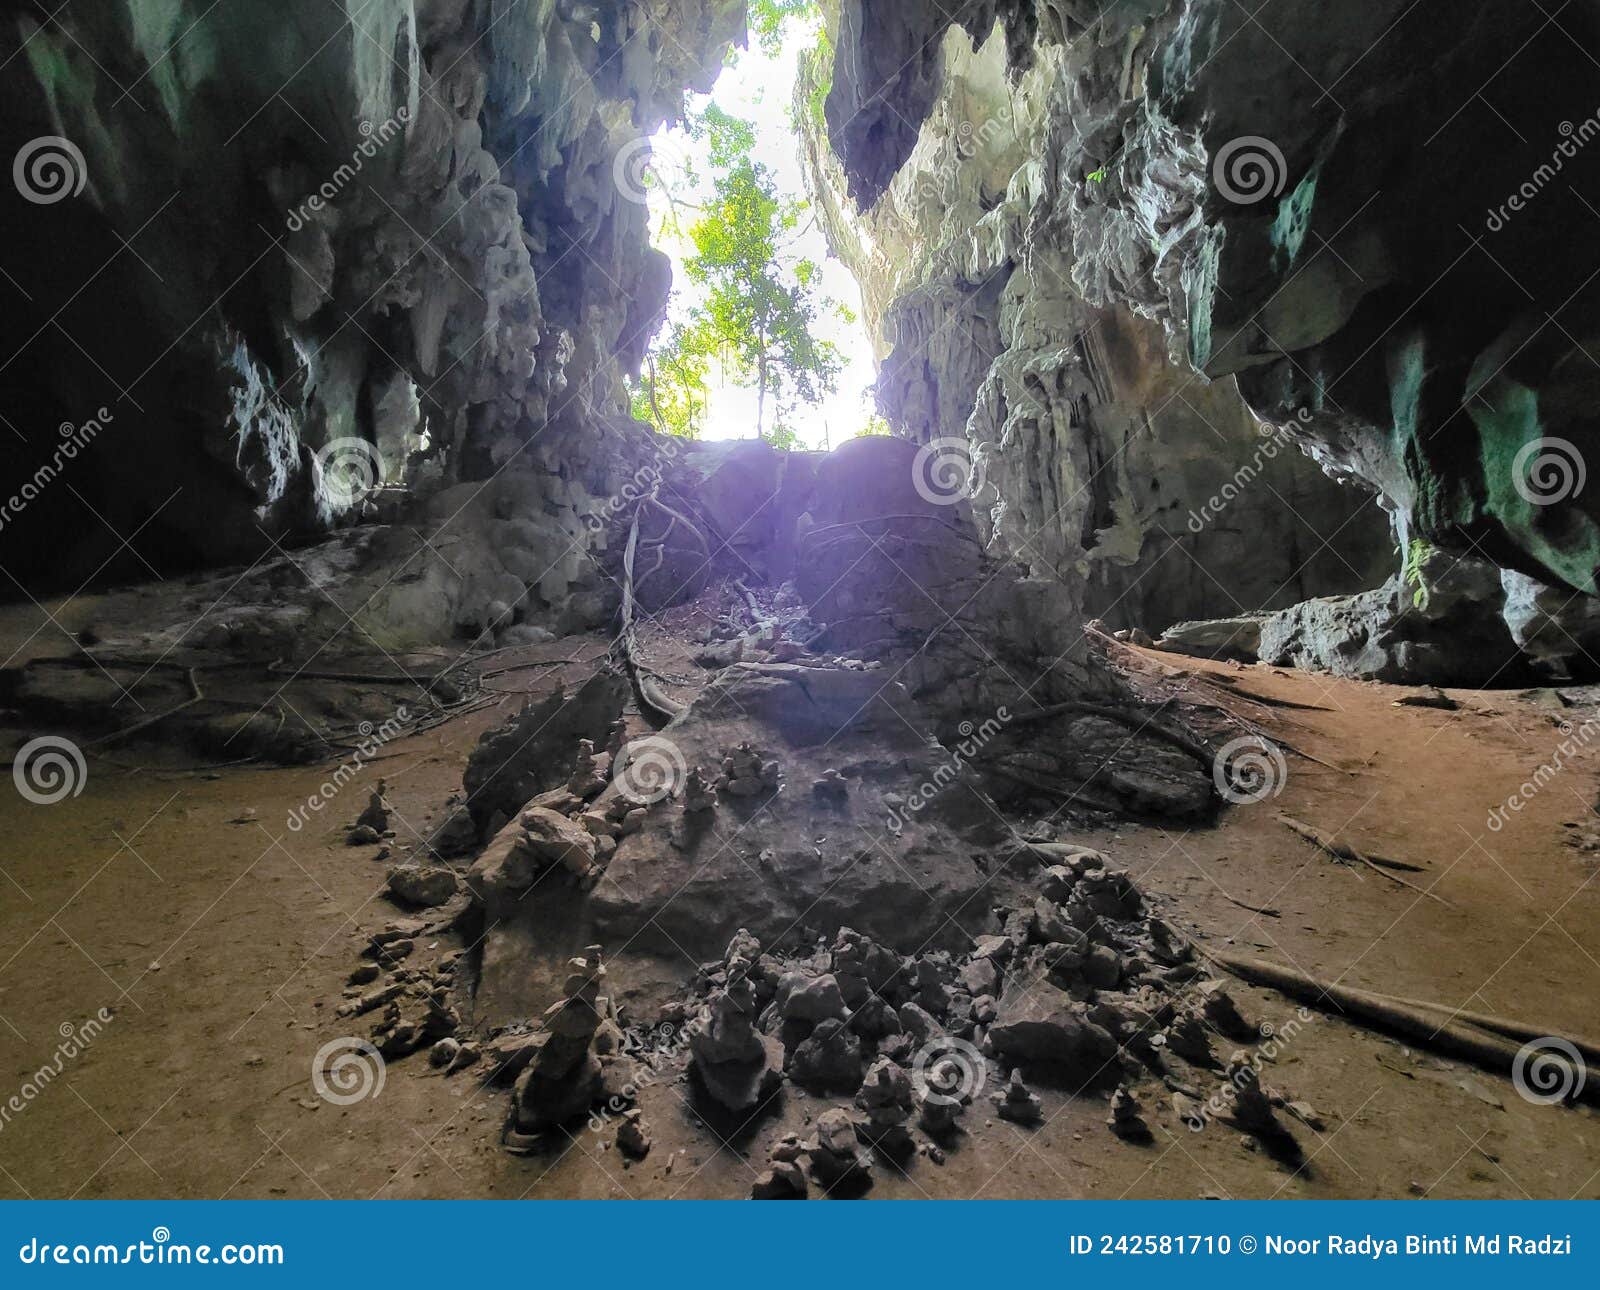 view inside gua pagar in dabong, kelantan, malaysia.